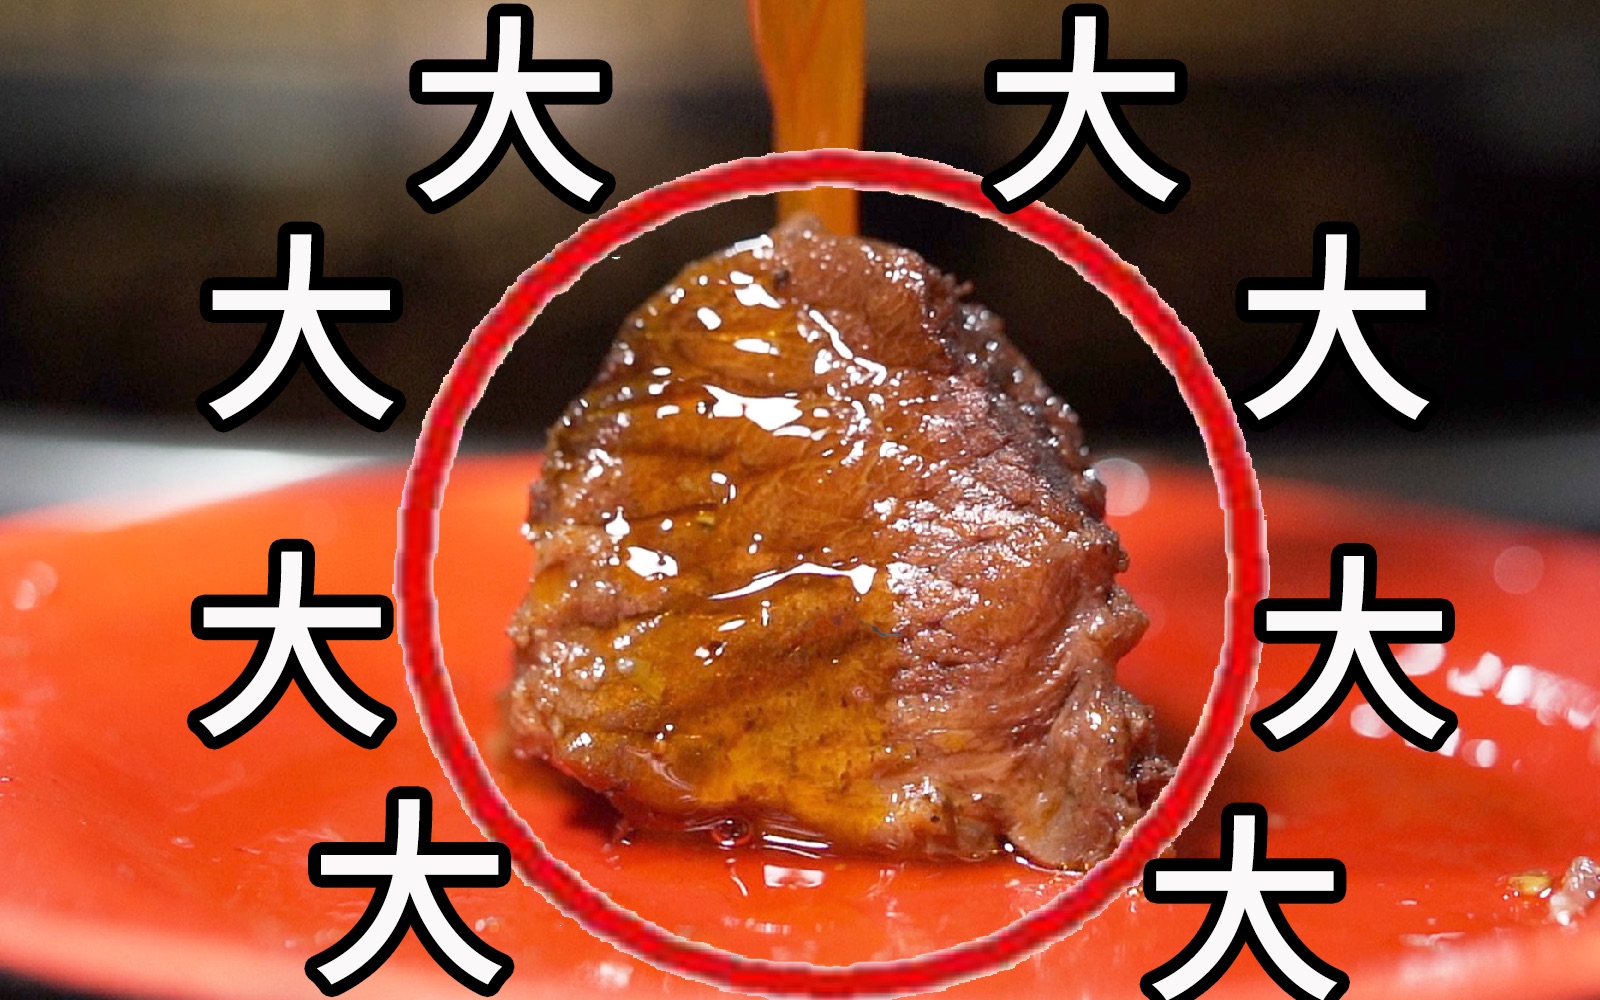 谈谈别人的看法：破案了！我终于在重庆找到了康师傅里的牛肉！ (●ﾟωﾟ●)【盗月社】[一阶段]的第1张示图